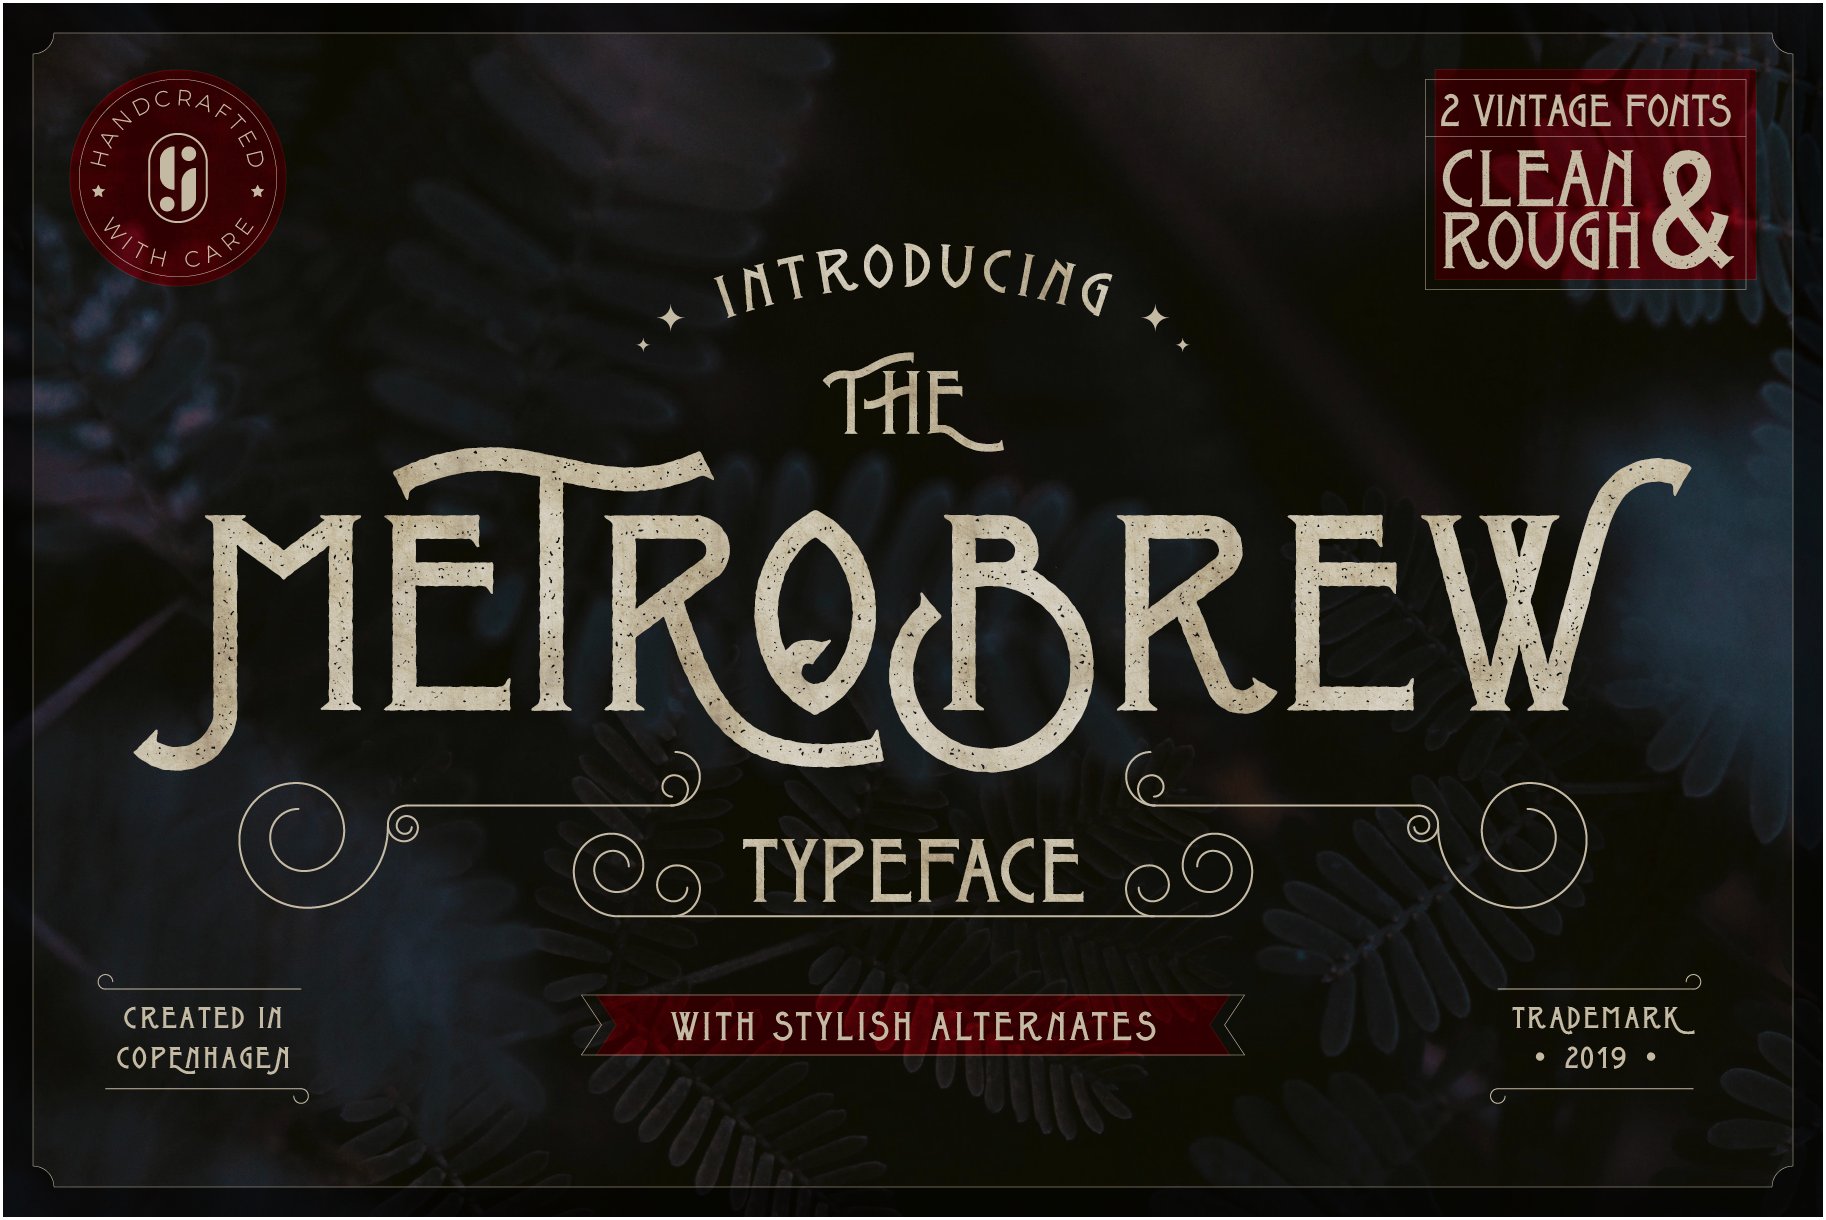 metrobrew 11 vintage font preview 1 333